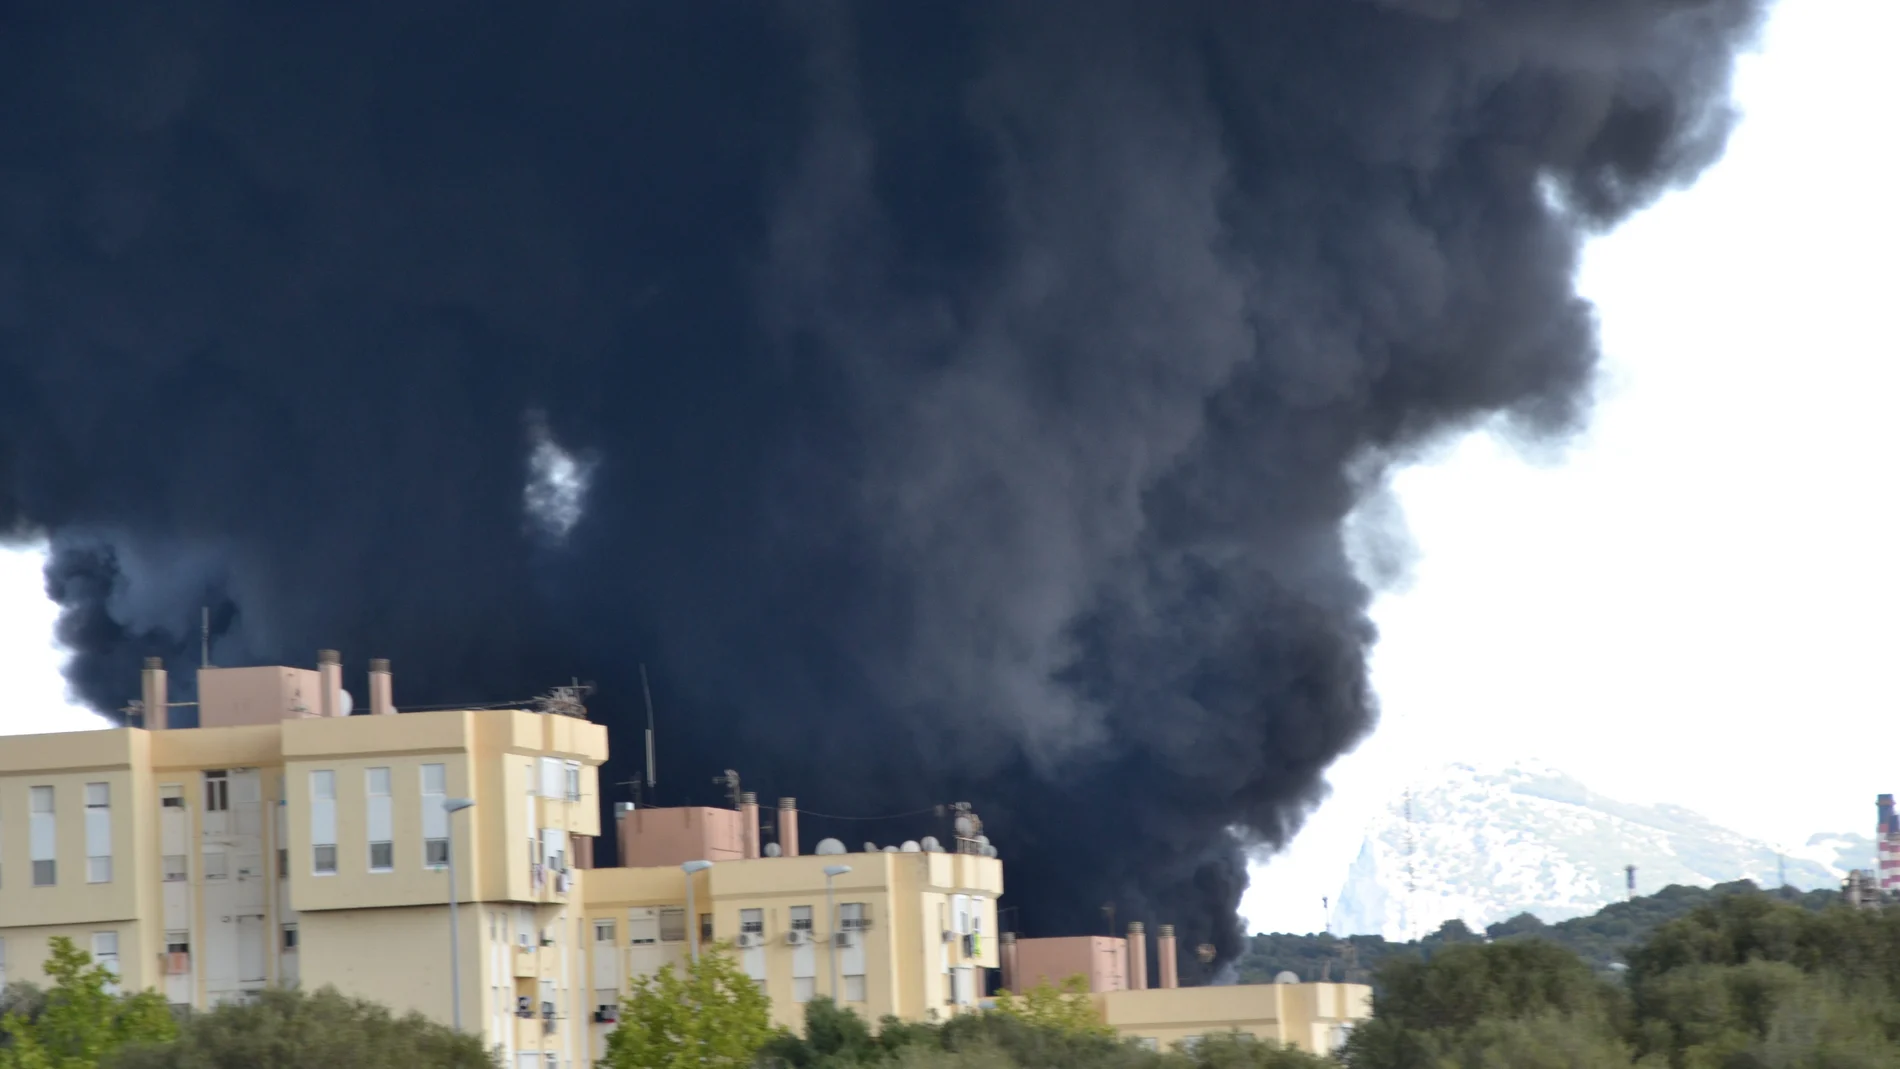 El pasado verano se produjo un incendio en un almacén de ácido tereftálico de una empresa de San Roque, en Cádiz